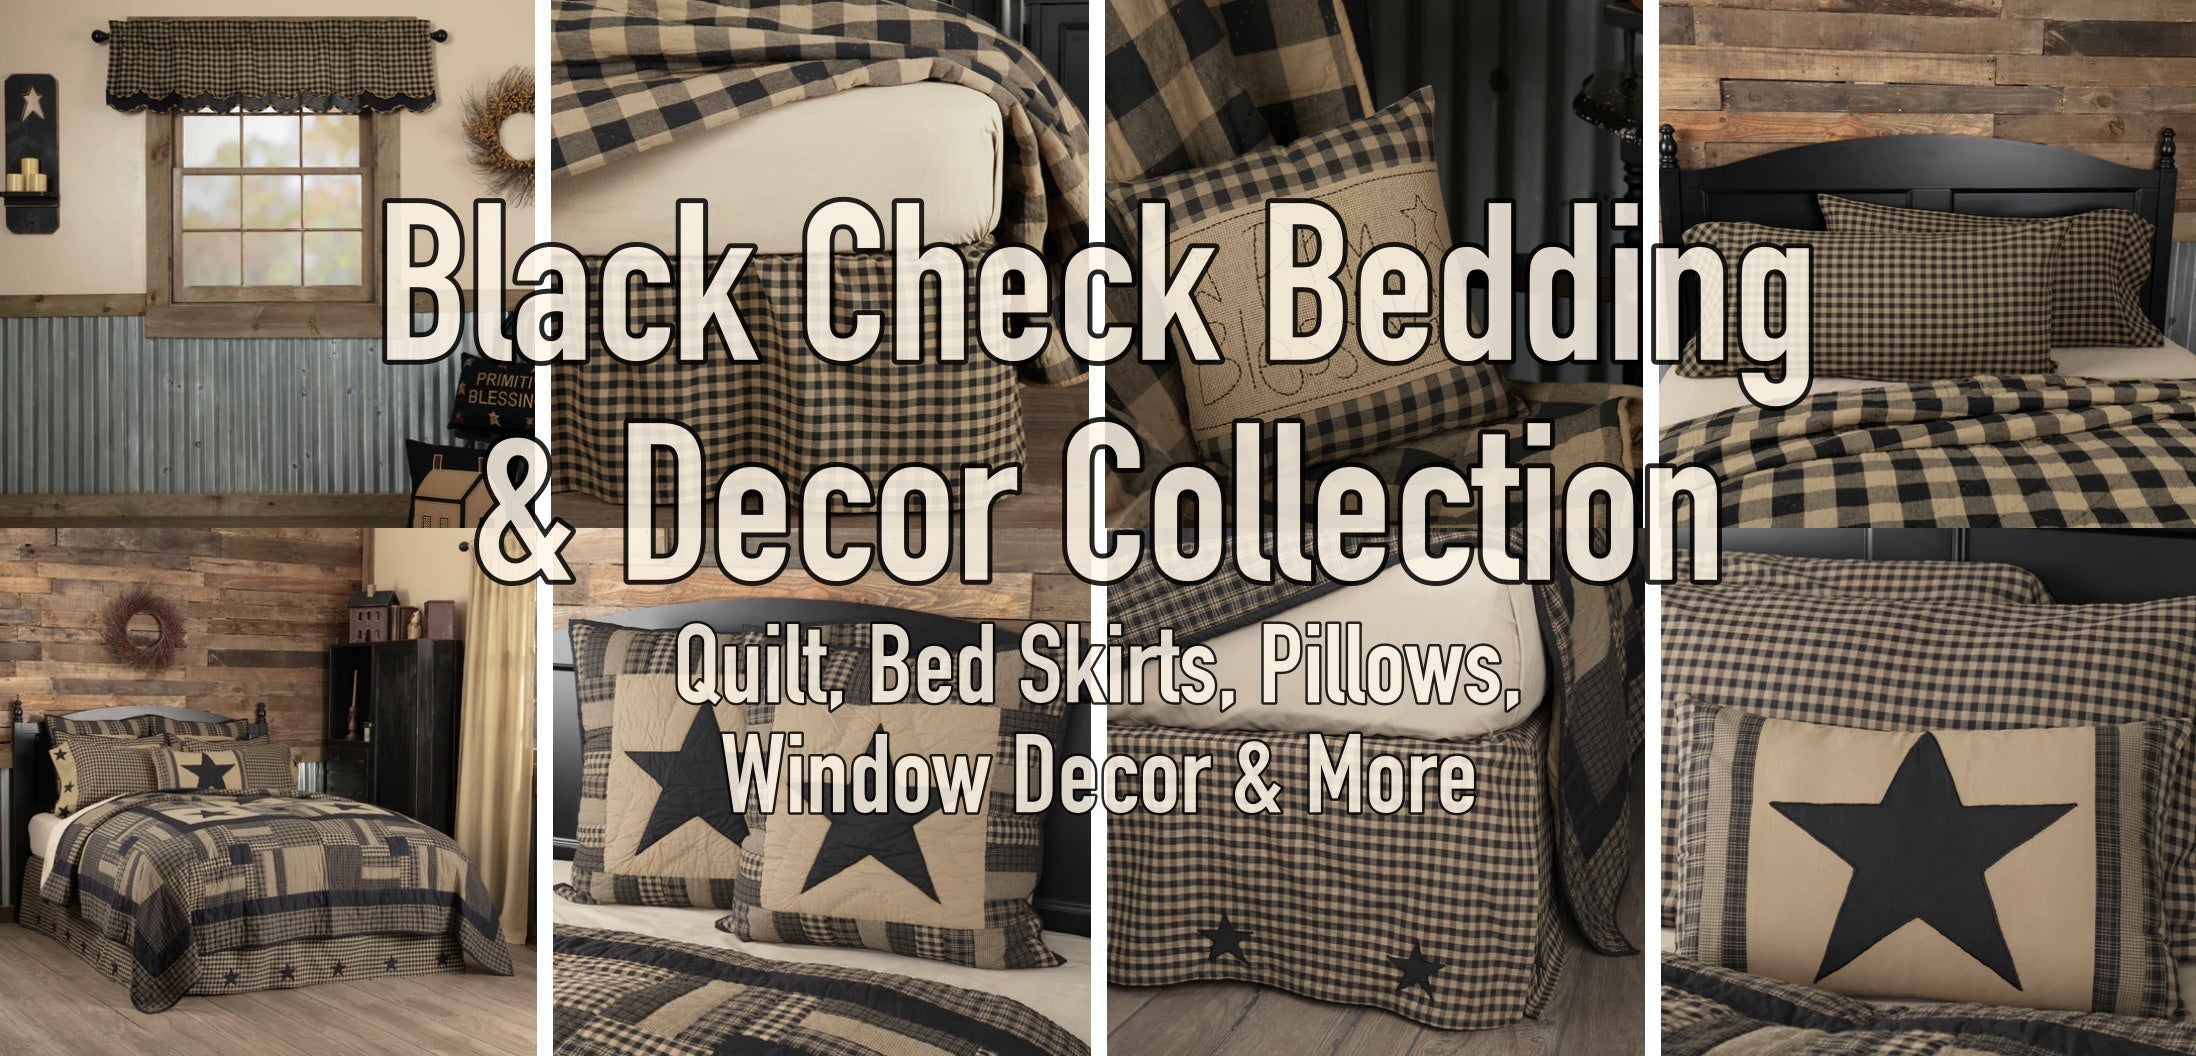 Black Check Bedding & Decor Collection